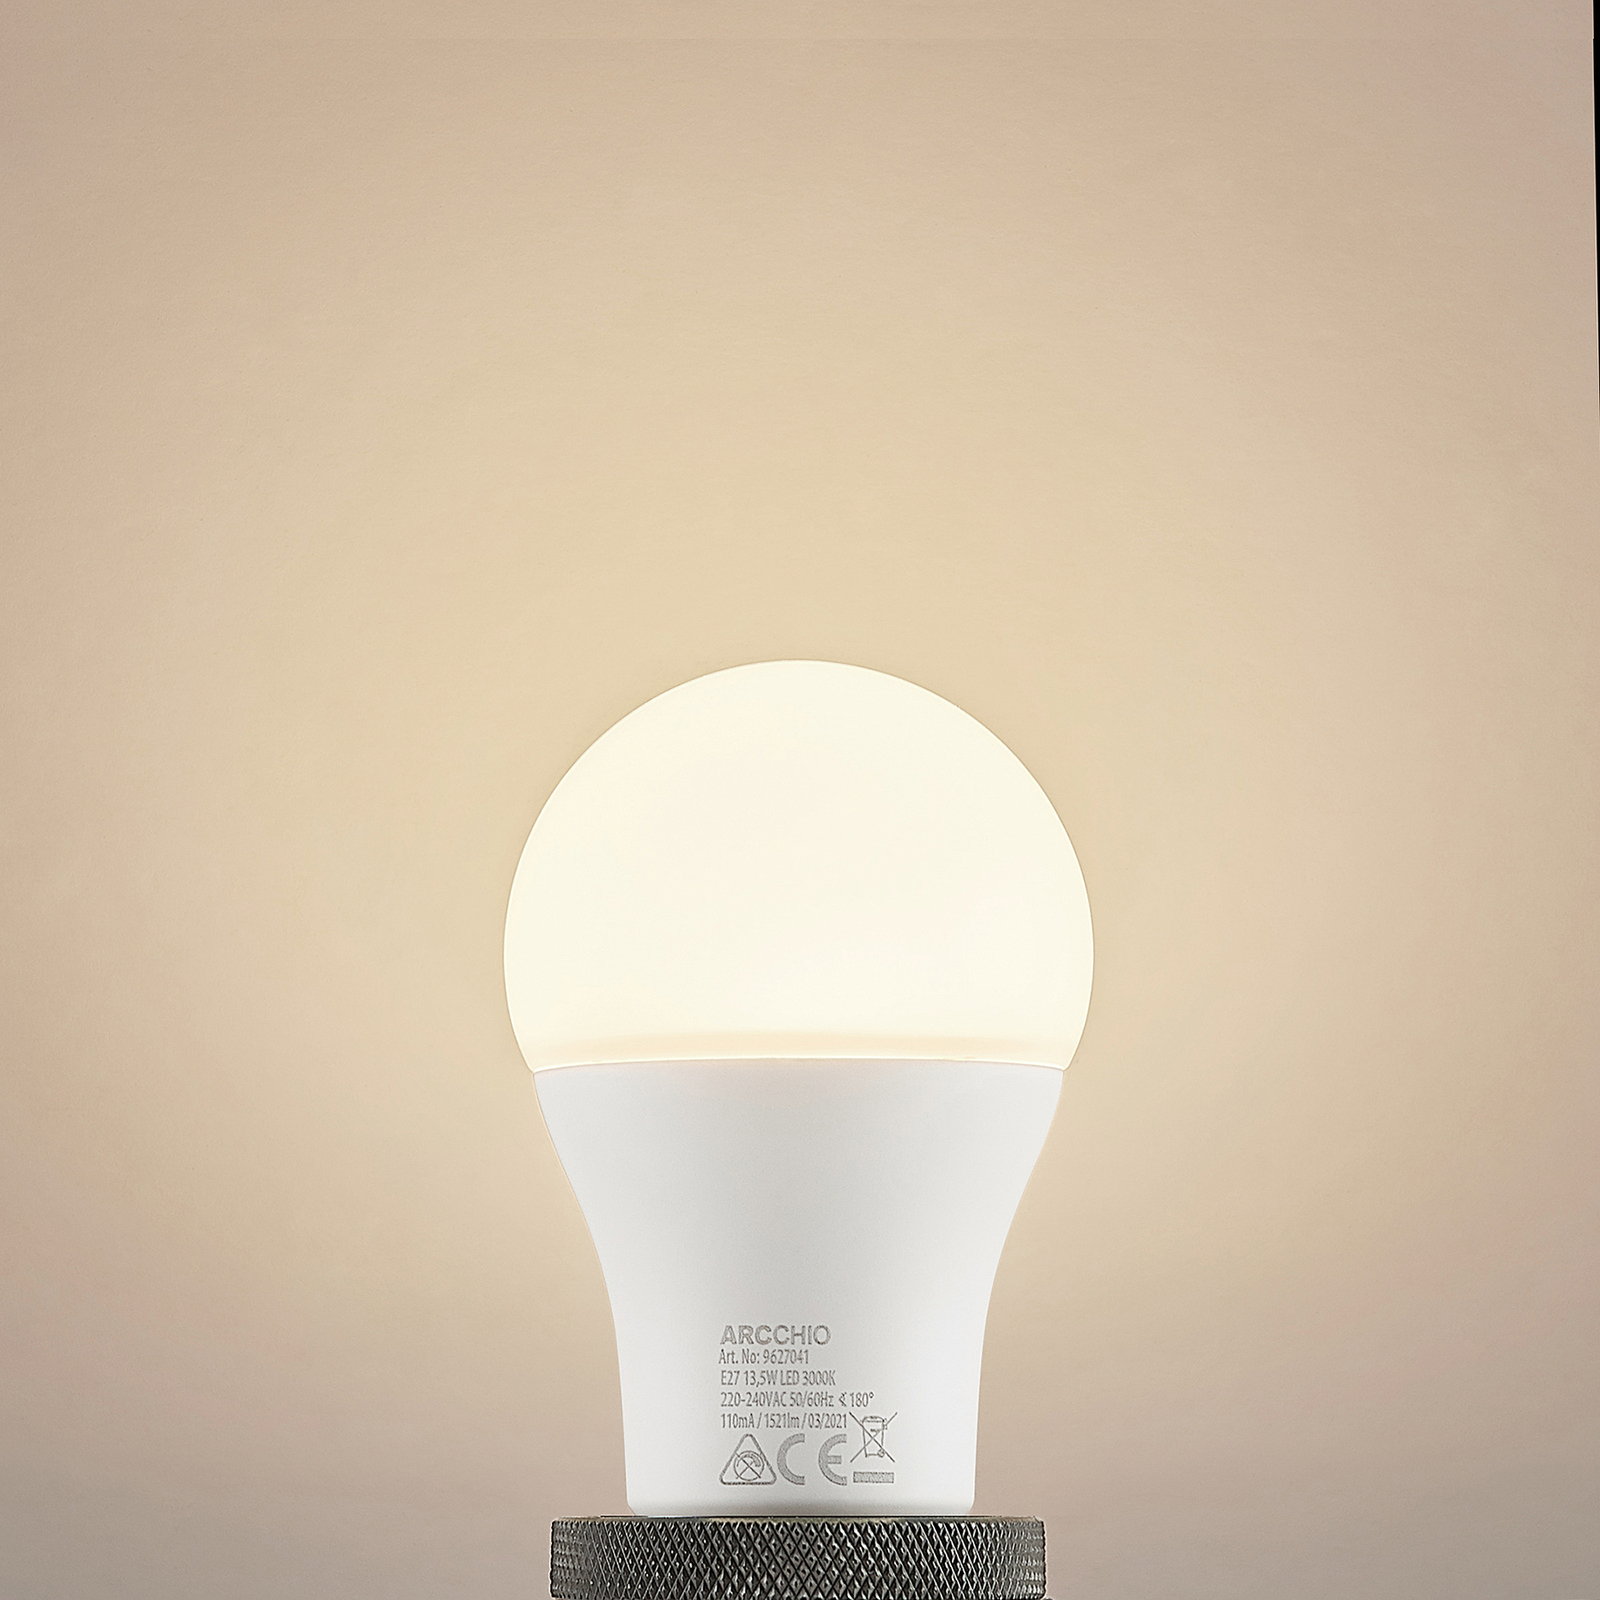 LED lámpa E27 A60 13,5W 3 000 K opál